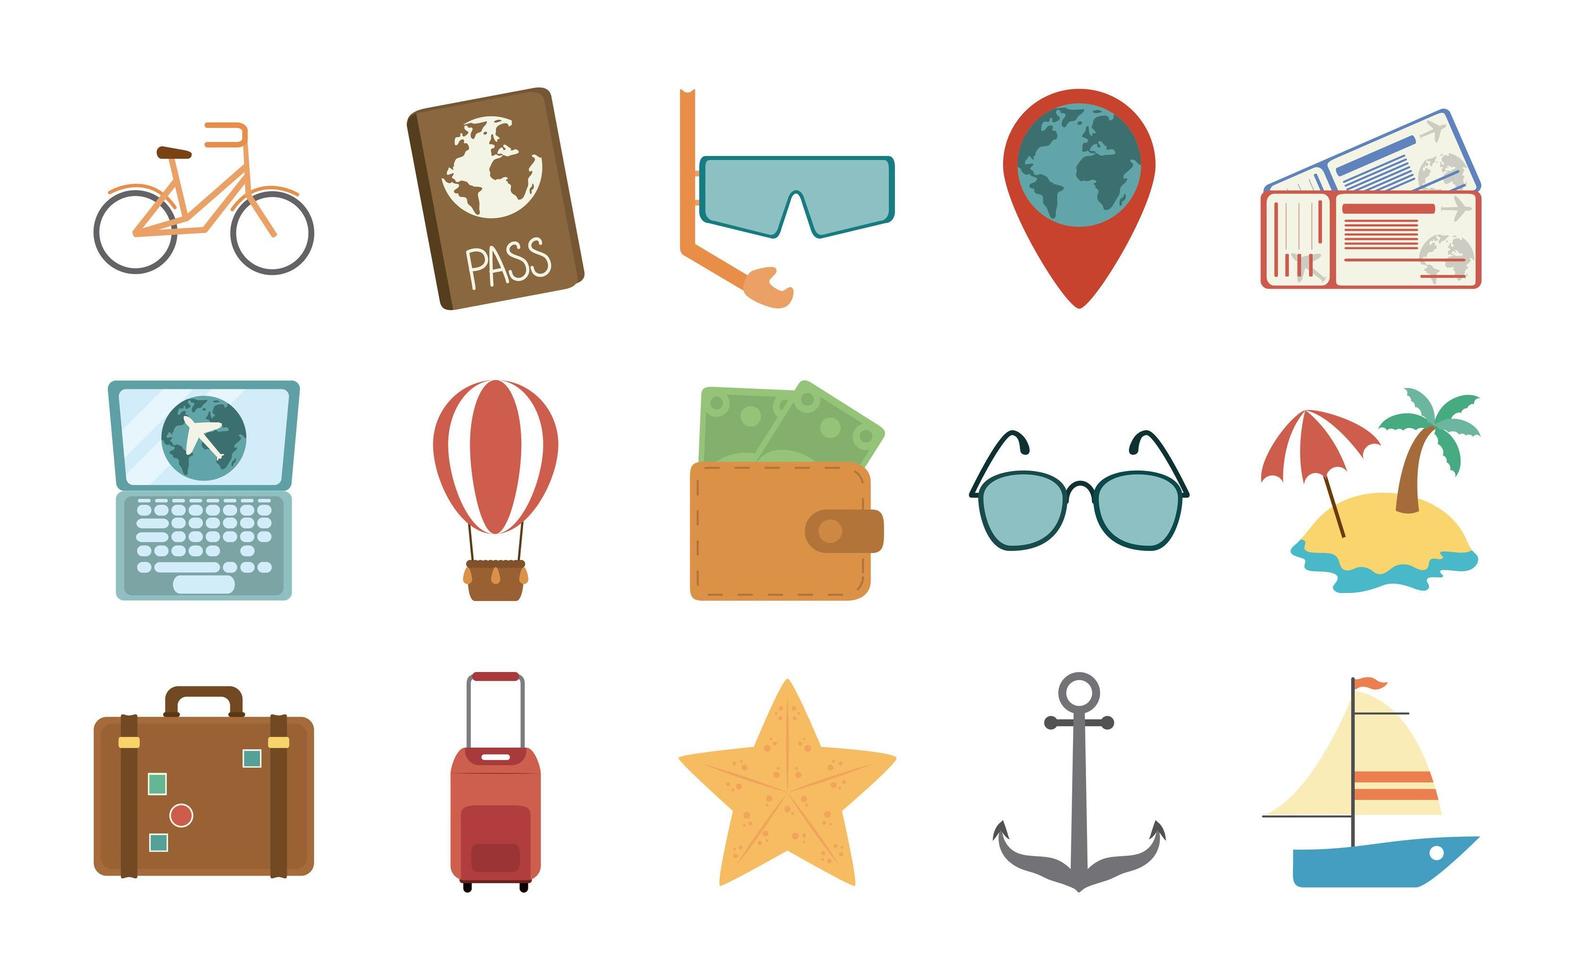 viaggi estivi e vacanze in set di icone isolate stile piatto vettore